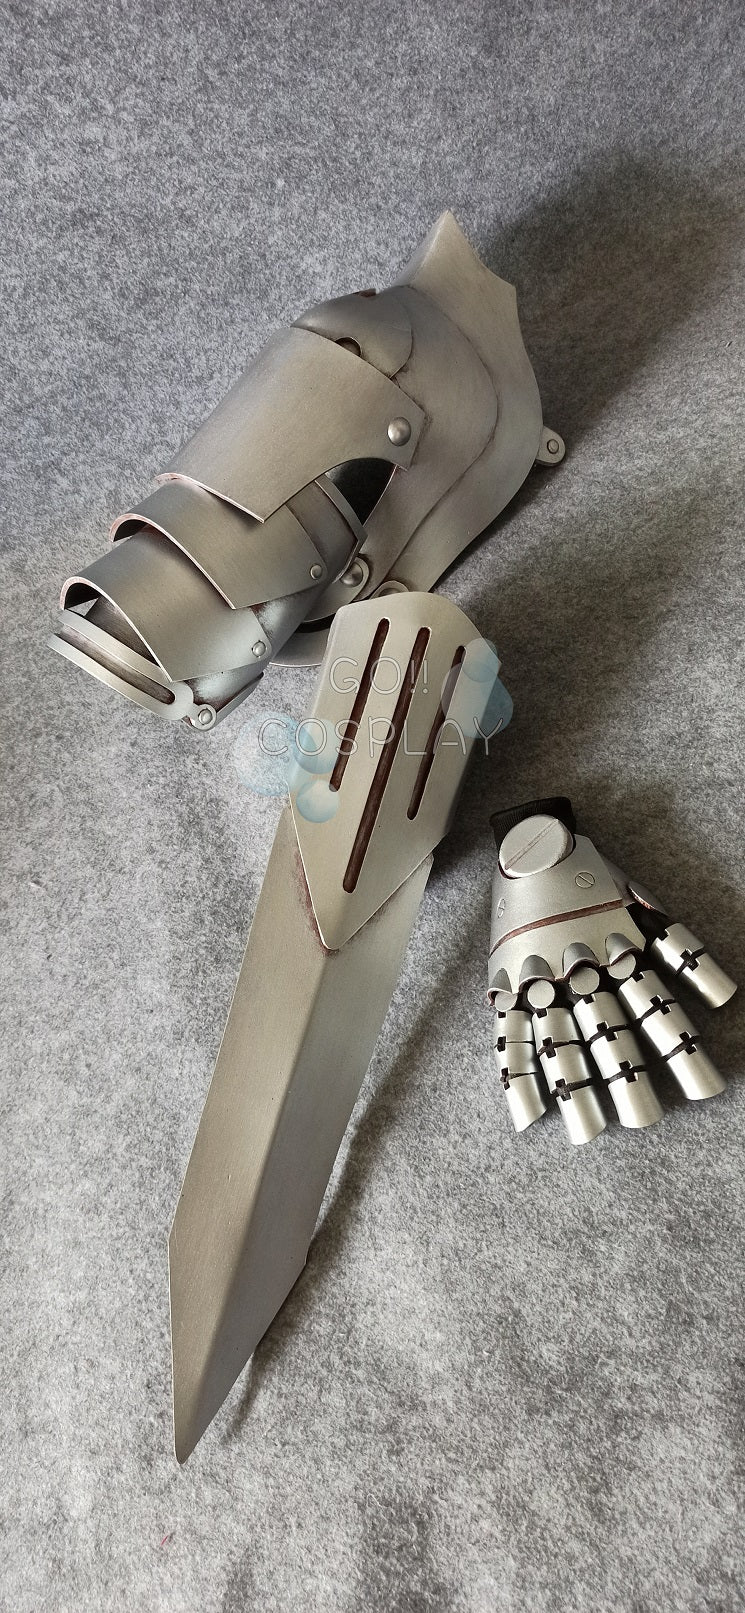 Fullmetal Alchemist Edward Elric Cosplay Arm for Sale